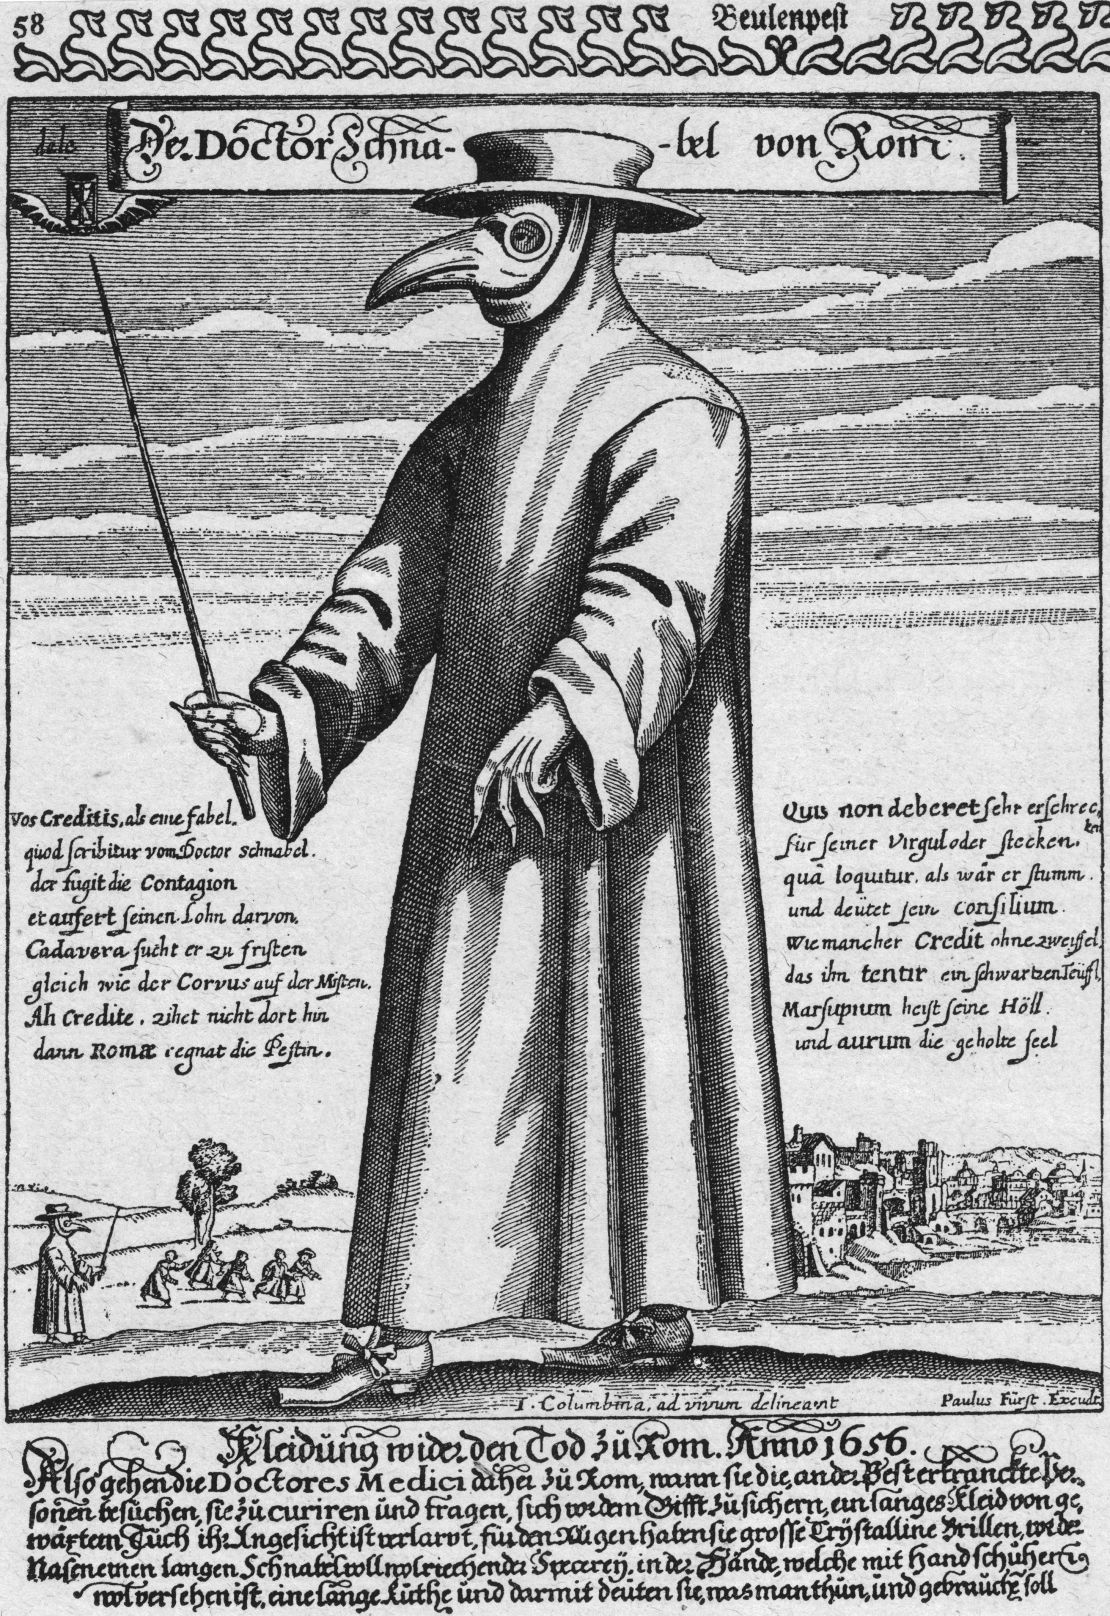 Circa 1656, a plague doctor in protective clothing. 